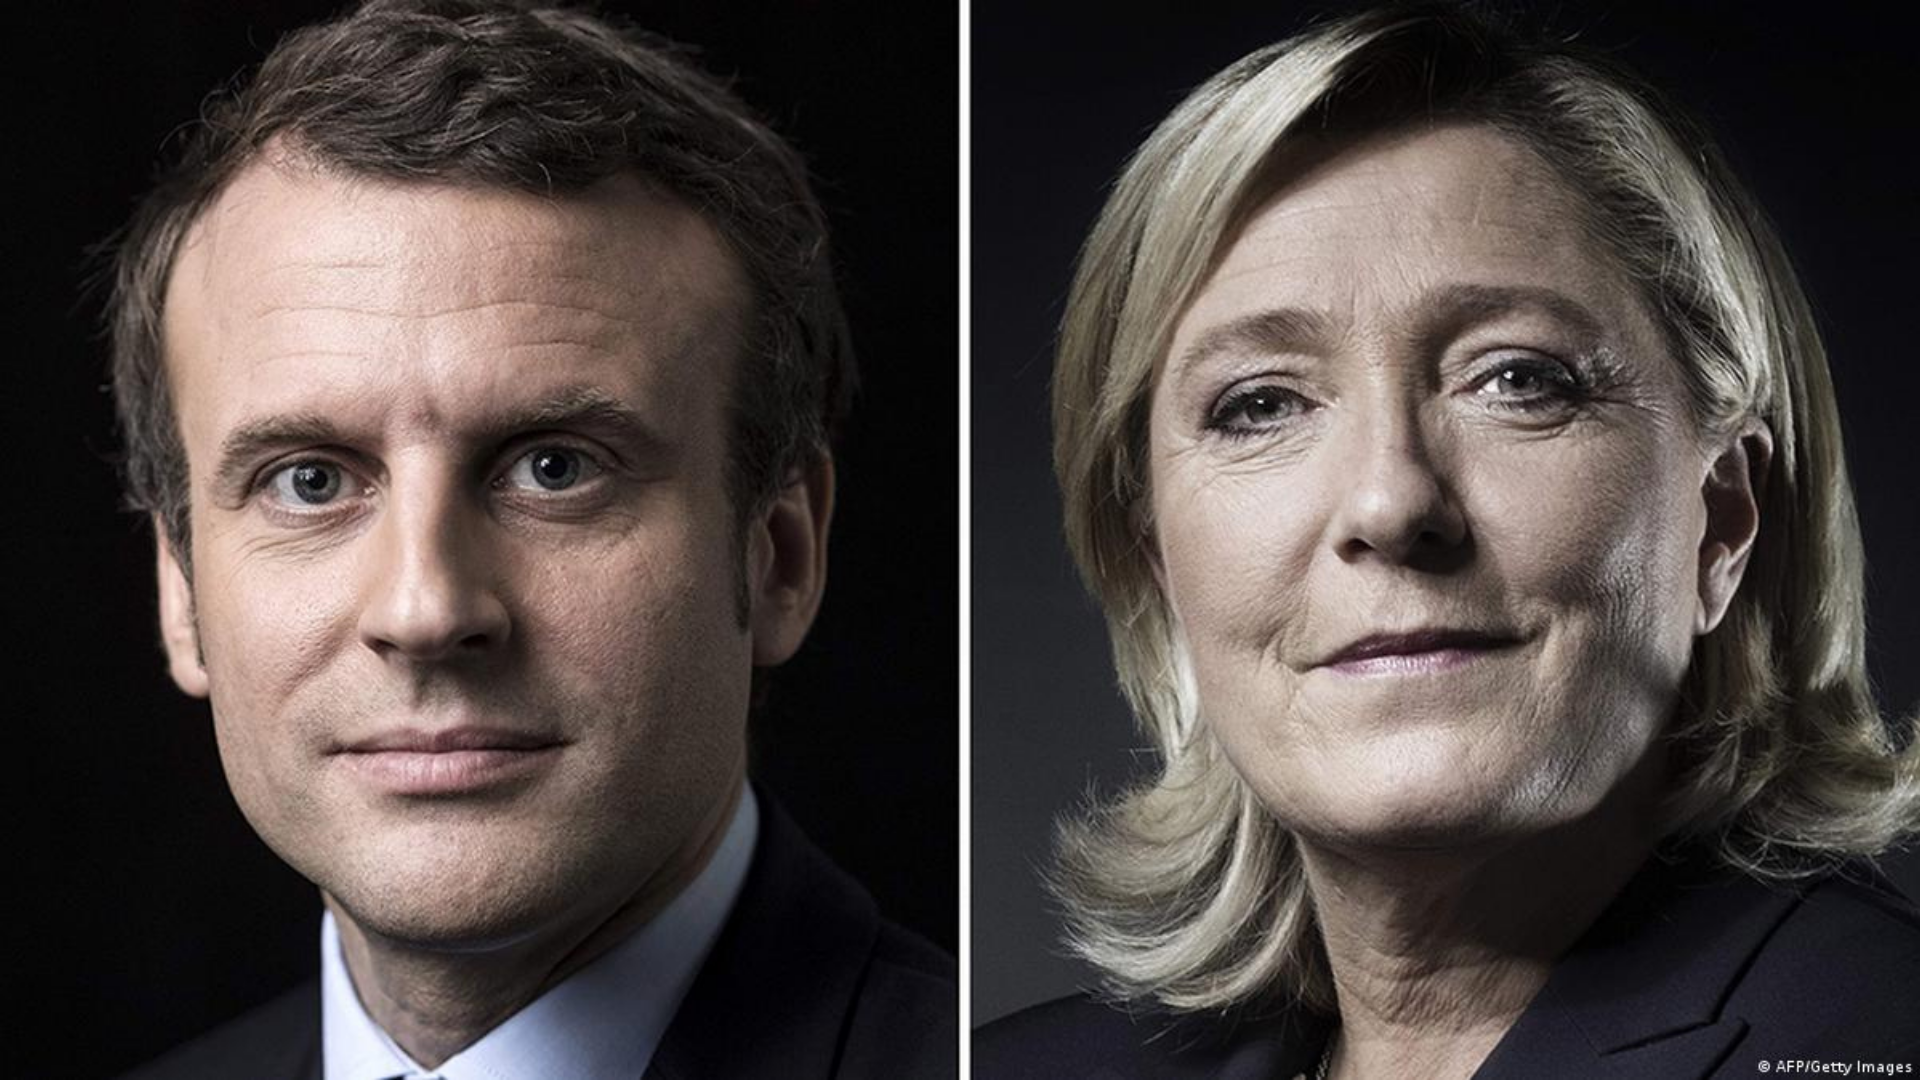 Duelo Macron x Le Pen deveria servir de lição para eleição presidencial no Brasil, diz especialista